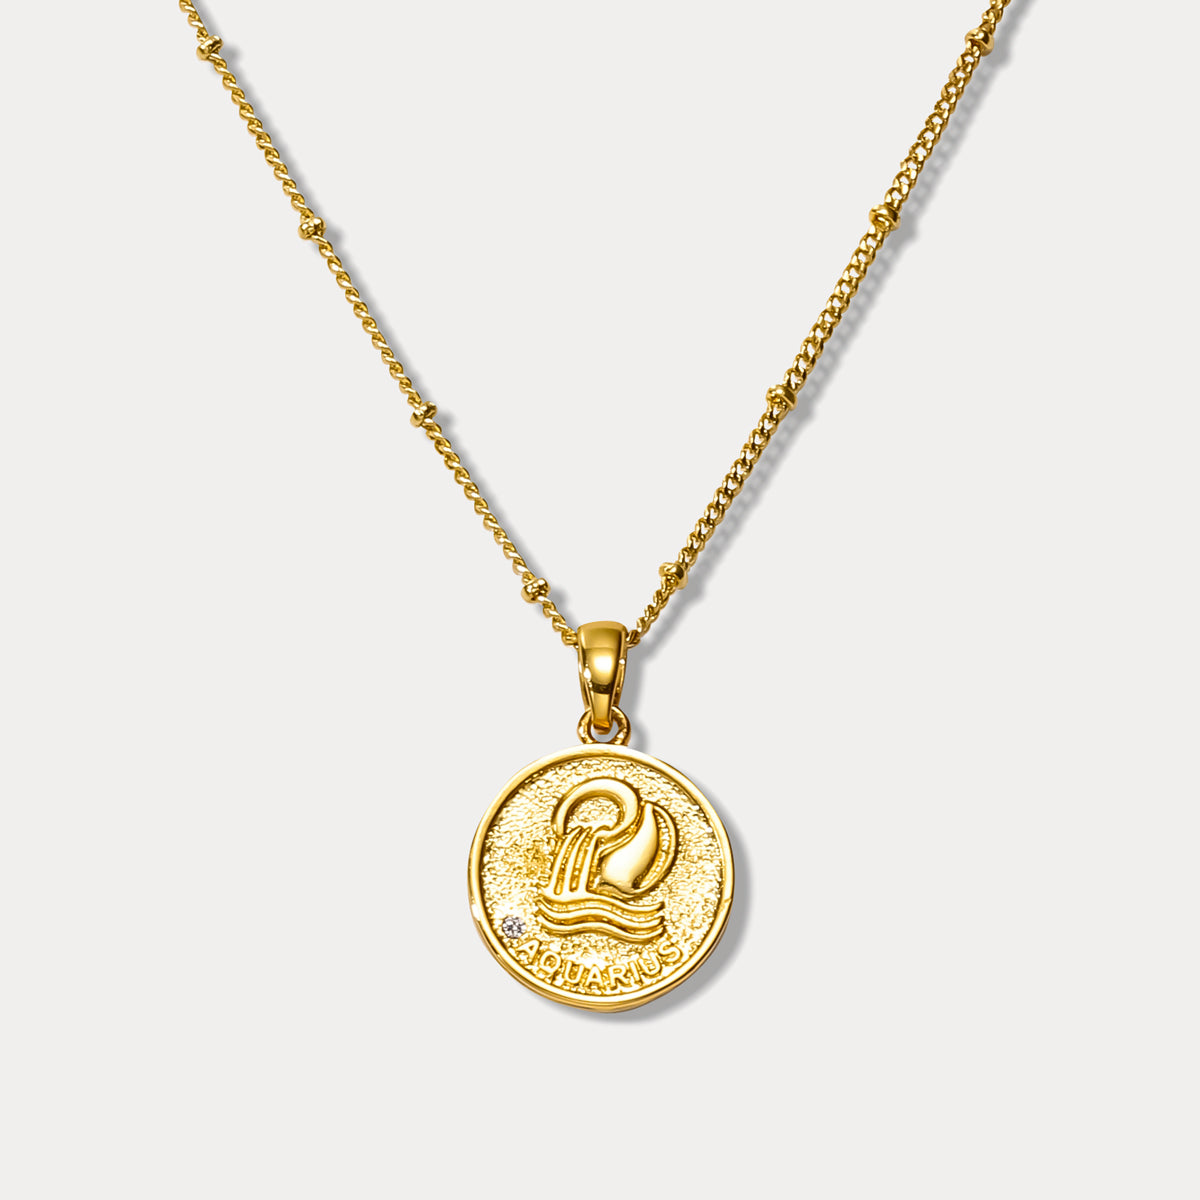 Aquarius Constellation Coin Pendant Necklace